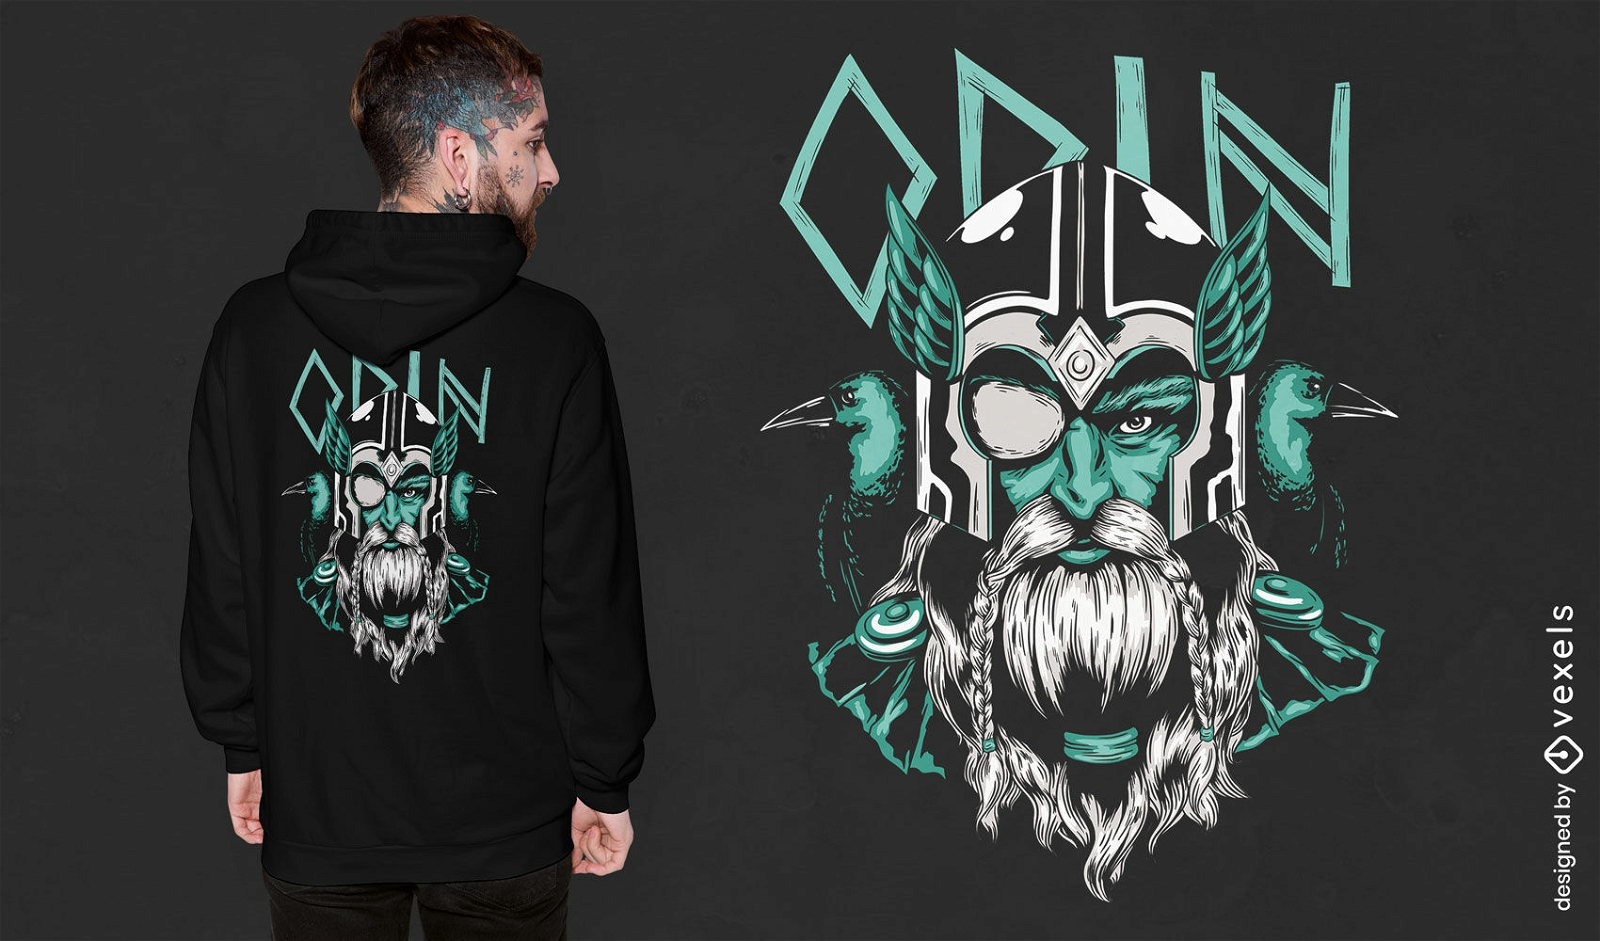 Odin nordic god t-shirt design